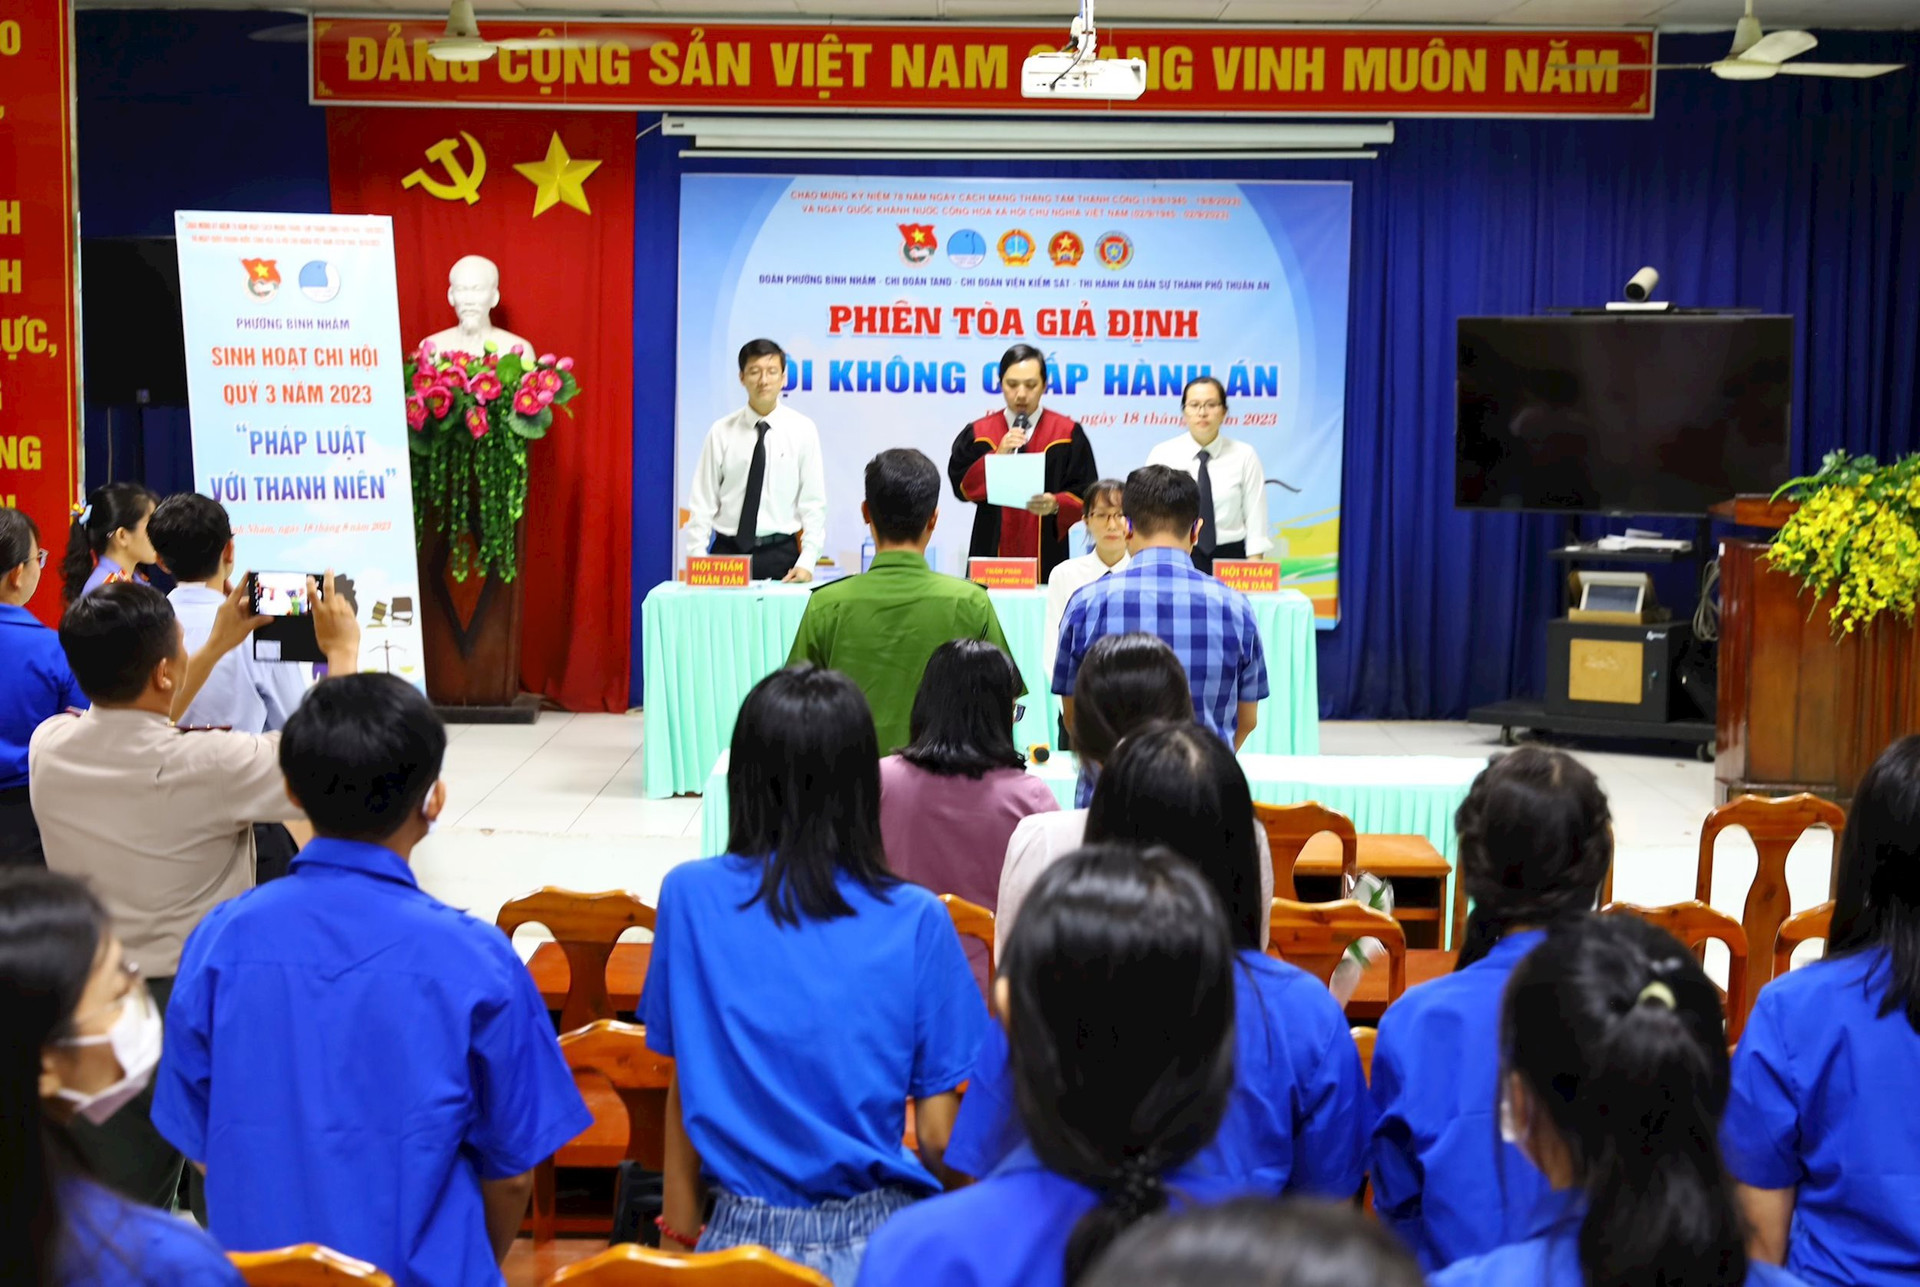 Tối ngày 18/8, liên ngành tư pháp TP Thuận An Phiên đã tổ chức Phiên tòa giả định về tội “Không chấp hành án” đã thu hút đông đảo người dân đến theo dõi